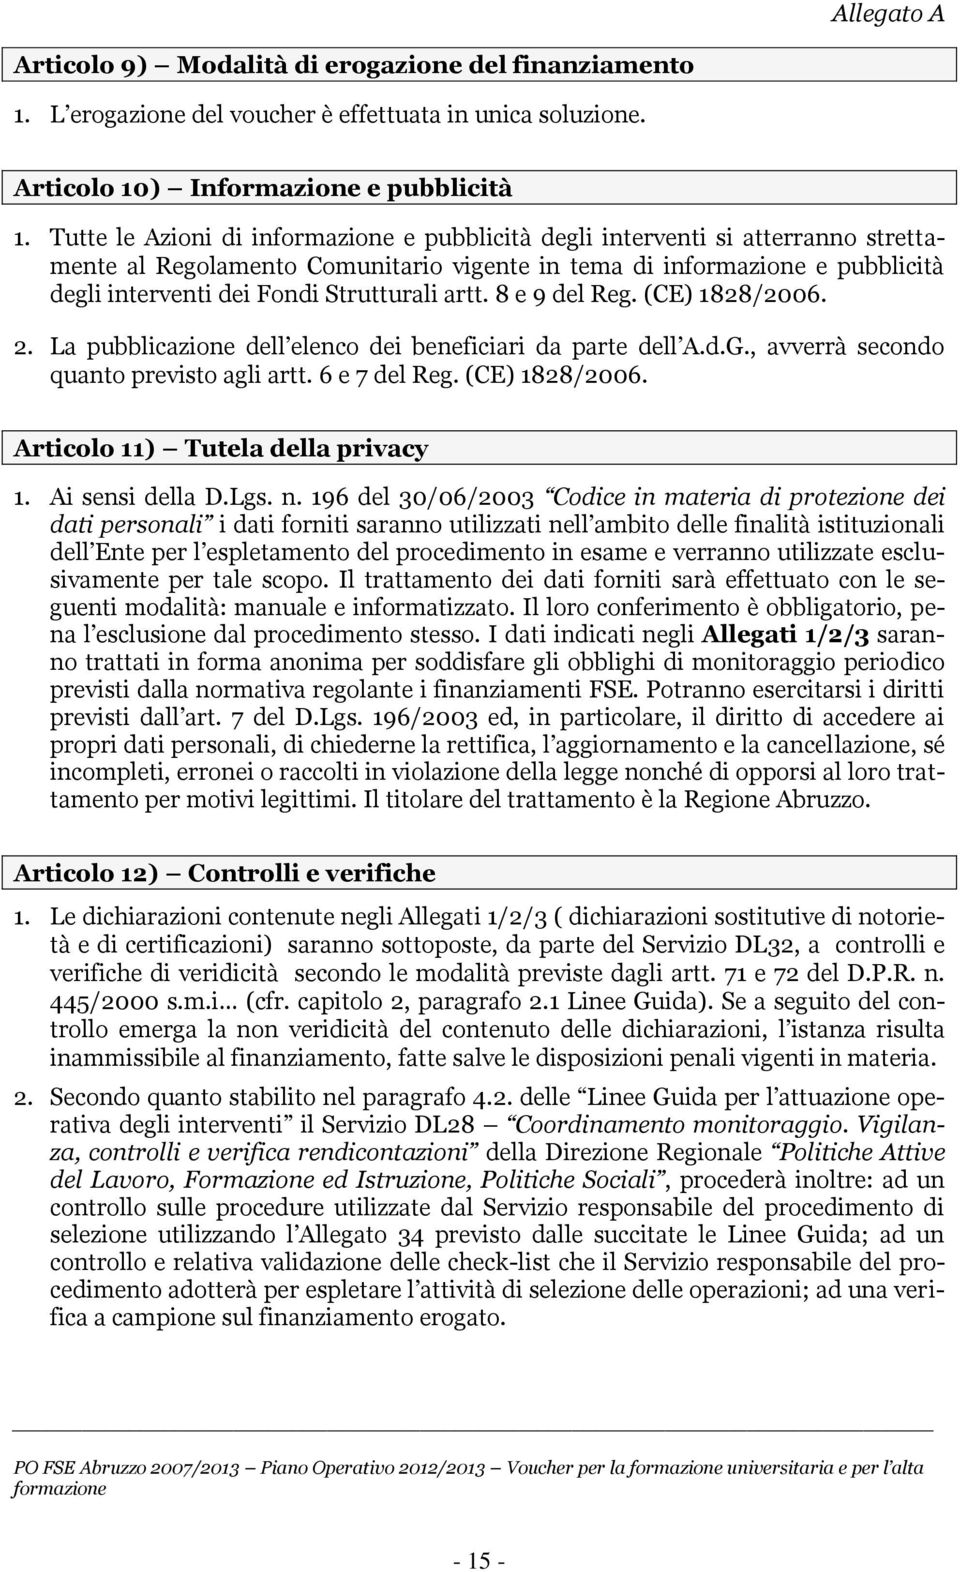 (CE) 1828/2006. 2. La pubblicazione dell elenco dei beneficiari da parte dell A.d.G., avverrà secondo quanto previsto agli artt. 6 e 7 del Reg. (CE) 1828/2006. Articolo 11) Tutela della privacy 1.